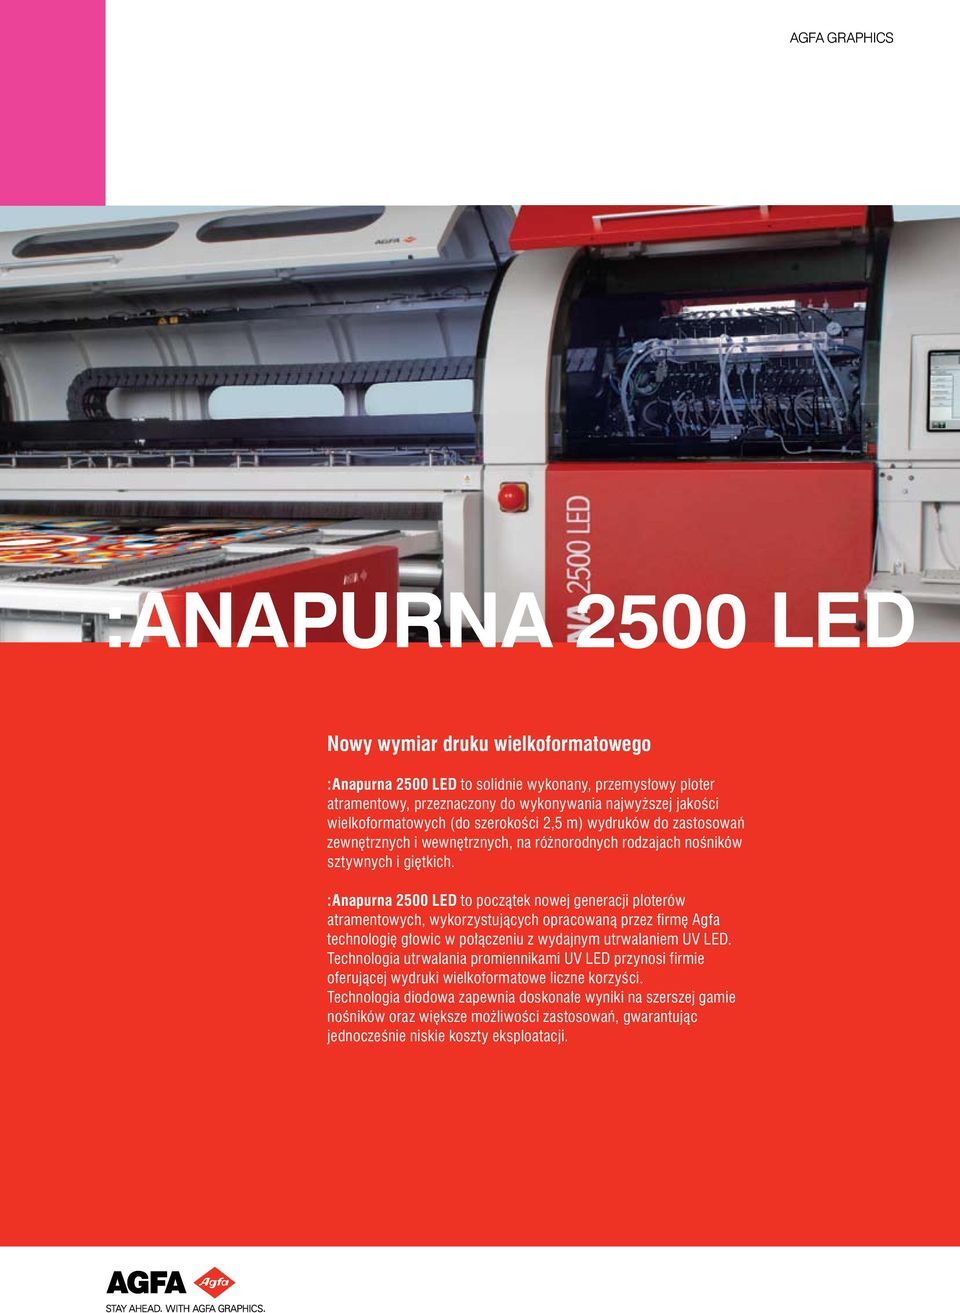 :Anapurna 2500 LED to początek nowej generacji ploterów atramentowych, wykorzystujących opracowaną przez firmę Agfa technologię głowic w połączeniu z wydajnym utrwalaniem UV LED.